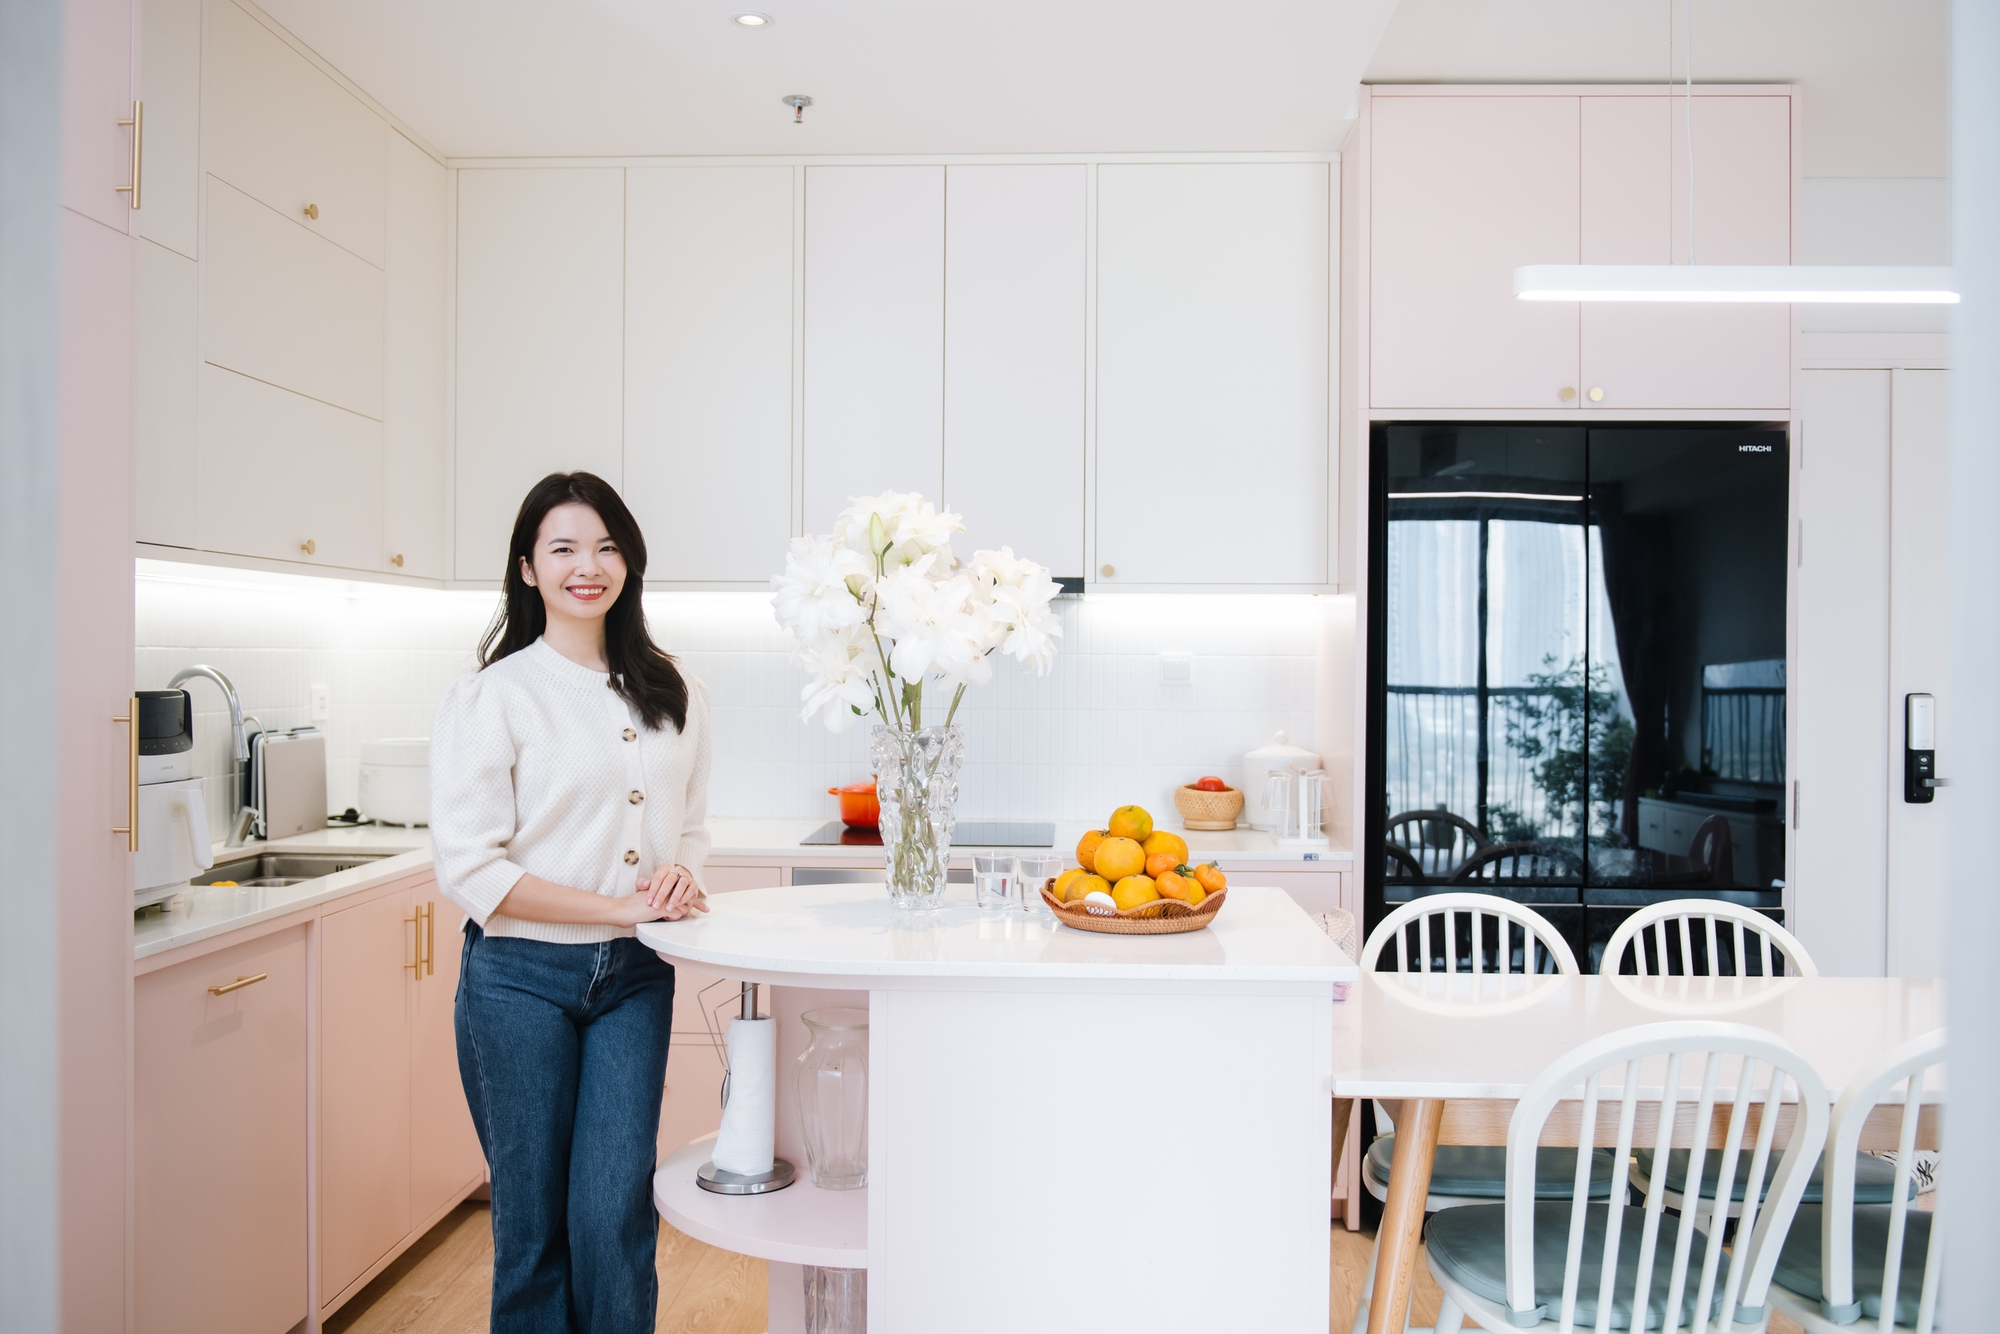 Căn hộ khiến beauty blogger Hoàng Ngọc Diệp "chốt" trong 15 phút: View "10 điểm không có nhưng", xịn nhất là căn bếp màu hồng